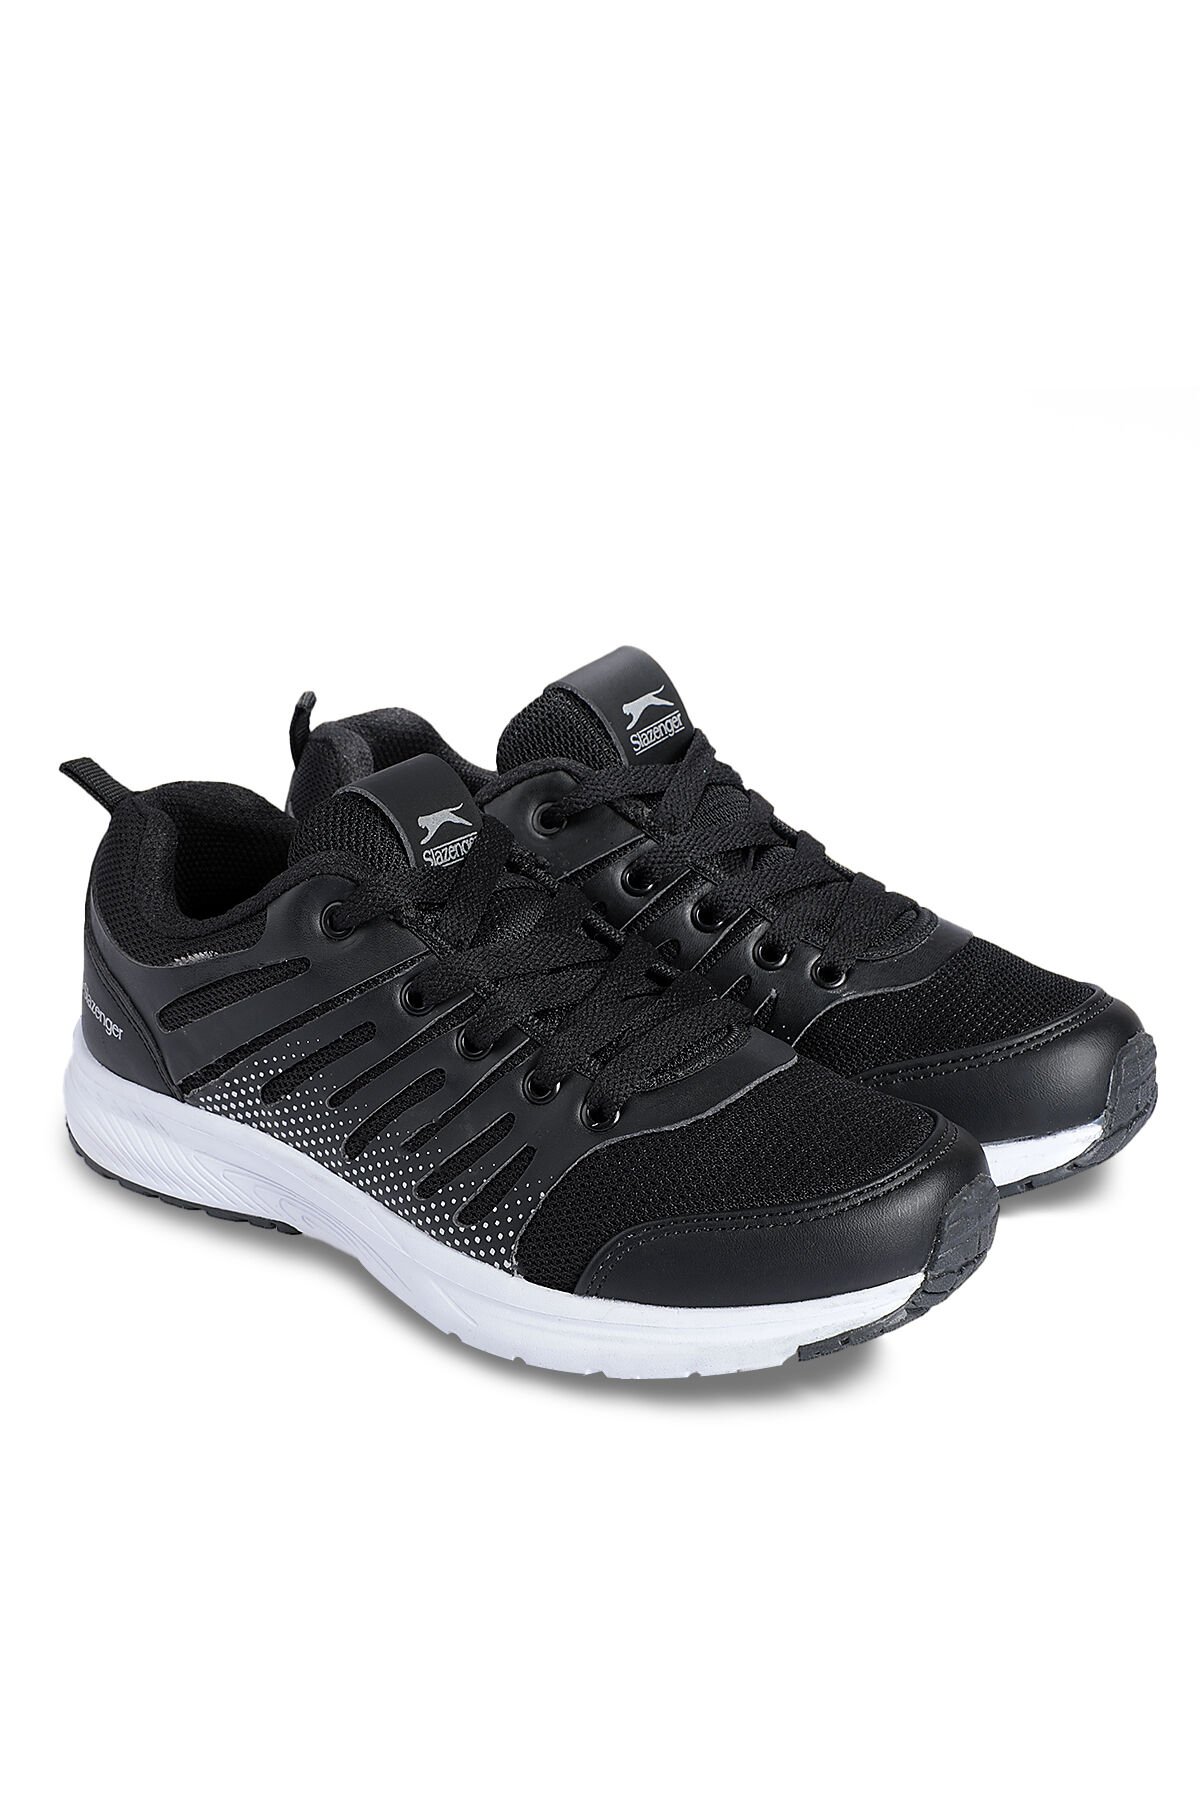 FONDA Sneaker Kadın Ayakkabı Siyah - Thumbnail